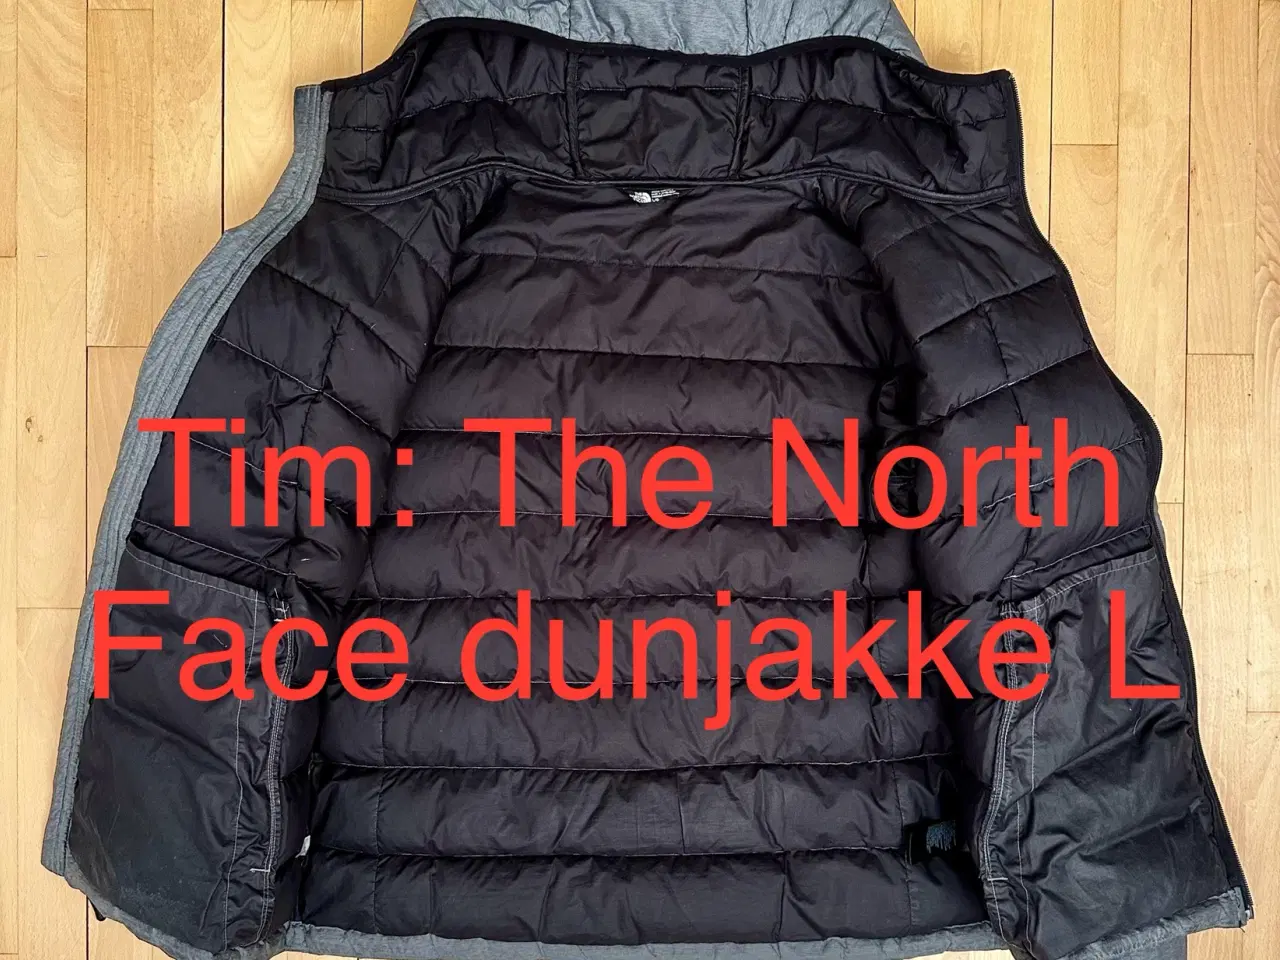 Billede 3 - The North Face dunjakke L 